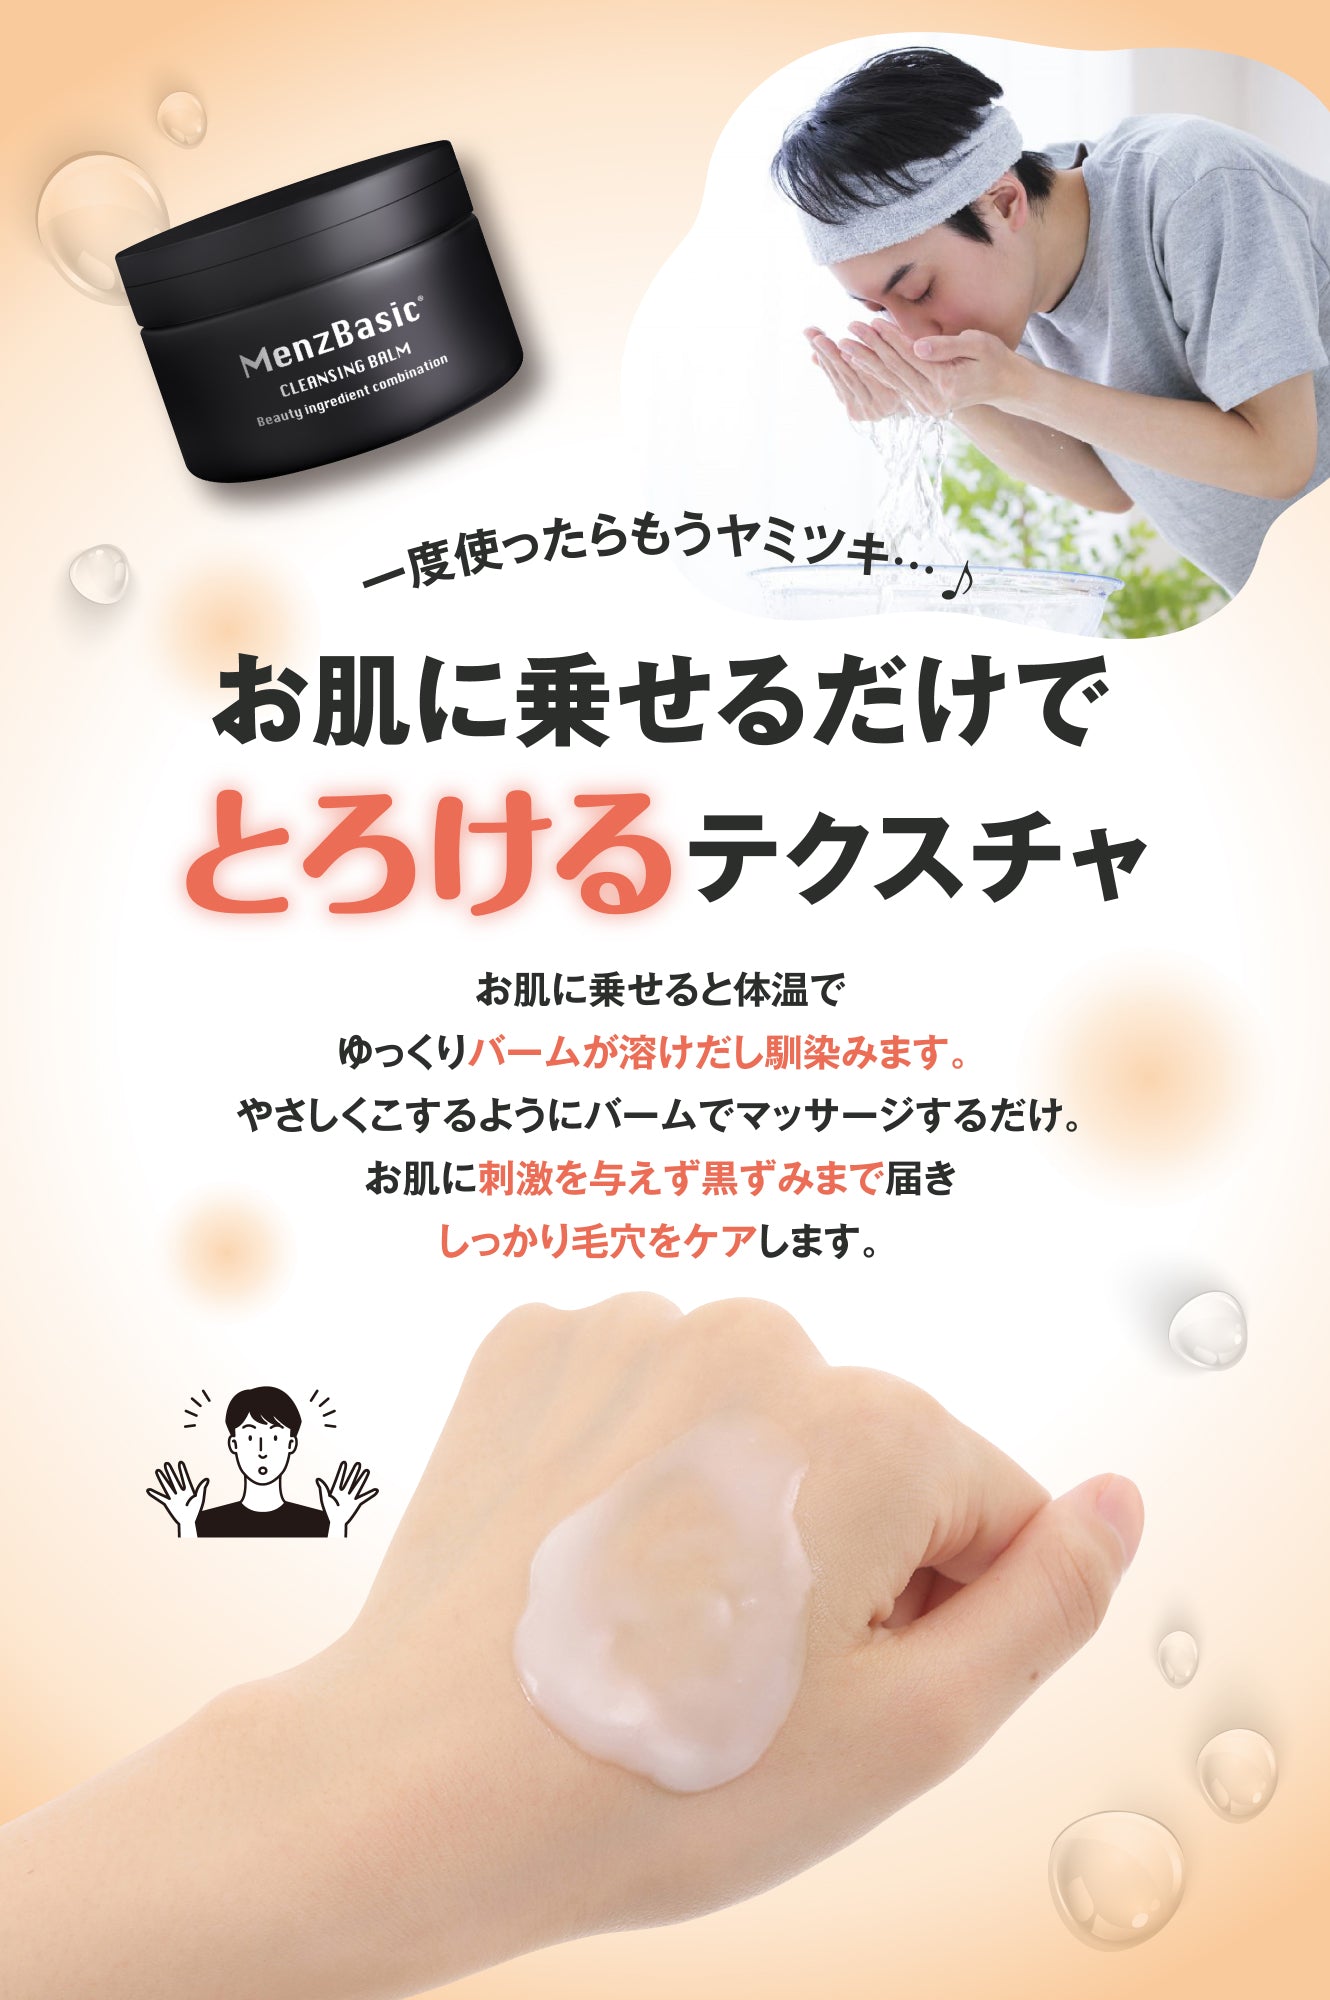 メンズベーシック クレンジングバーム 日本製 洗顔 毛穴 角質 黒ずみケア 90g